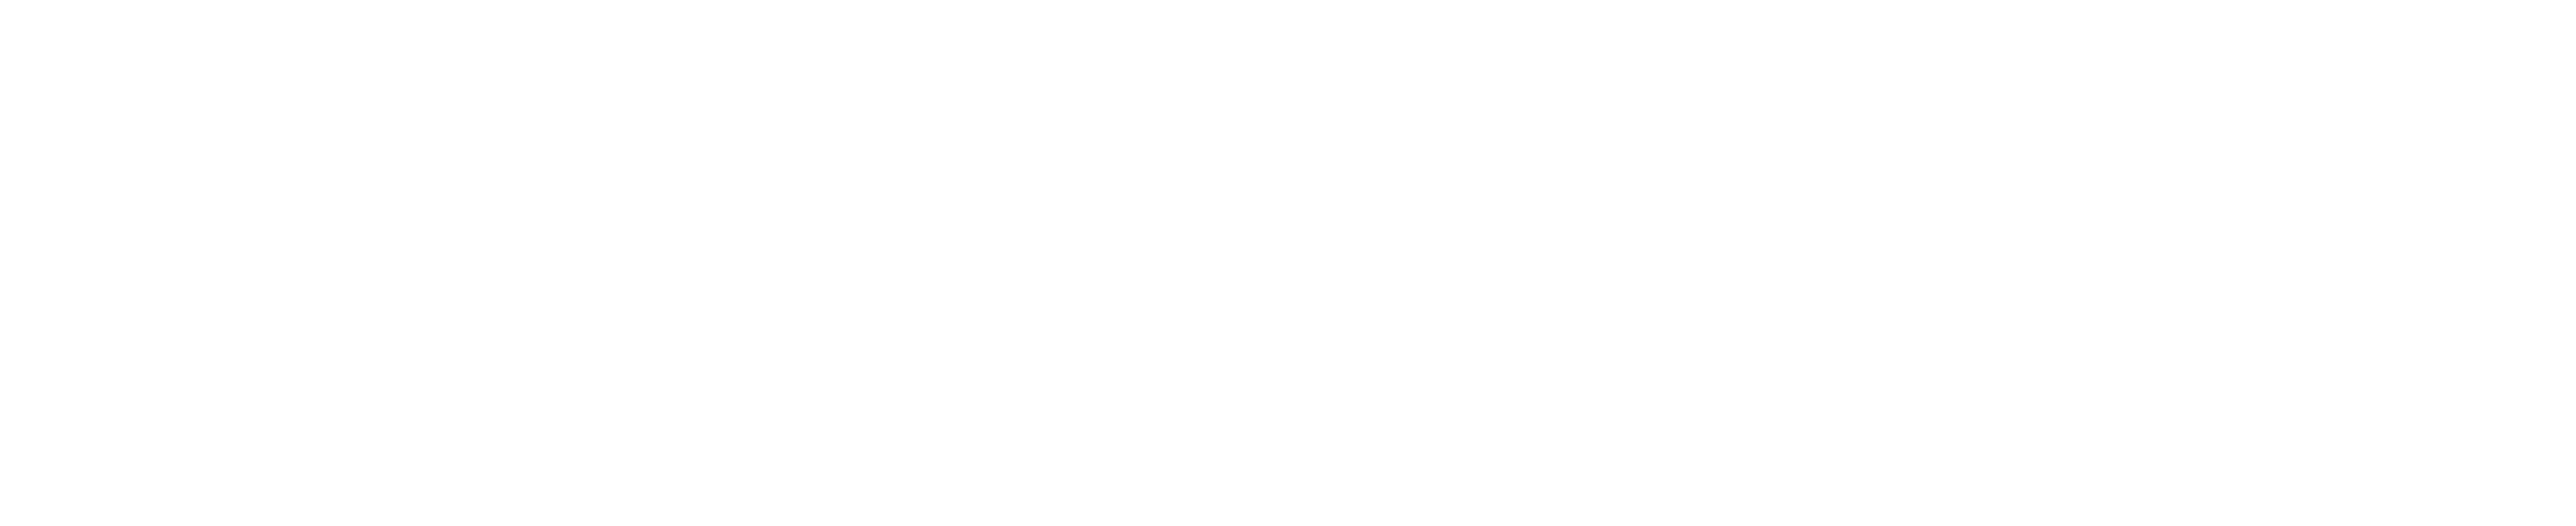 SeedMoney